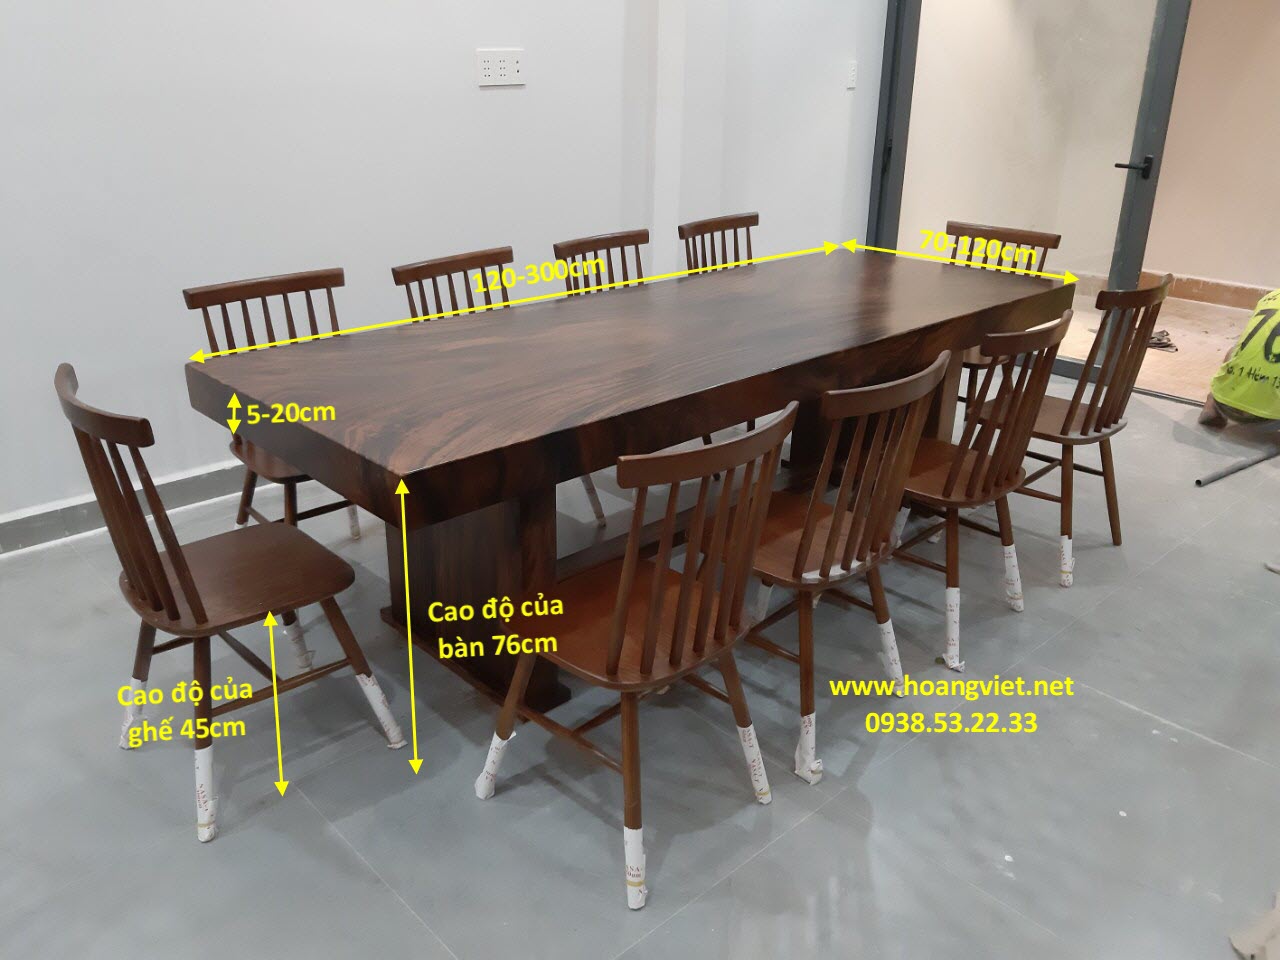 Kích thước bàn ghế gỗ nguyên khối tiêu chuẩn là bao nhiêu?